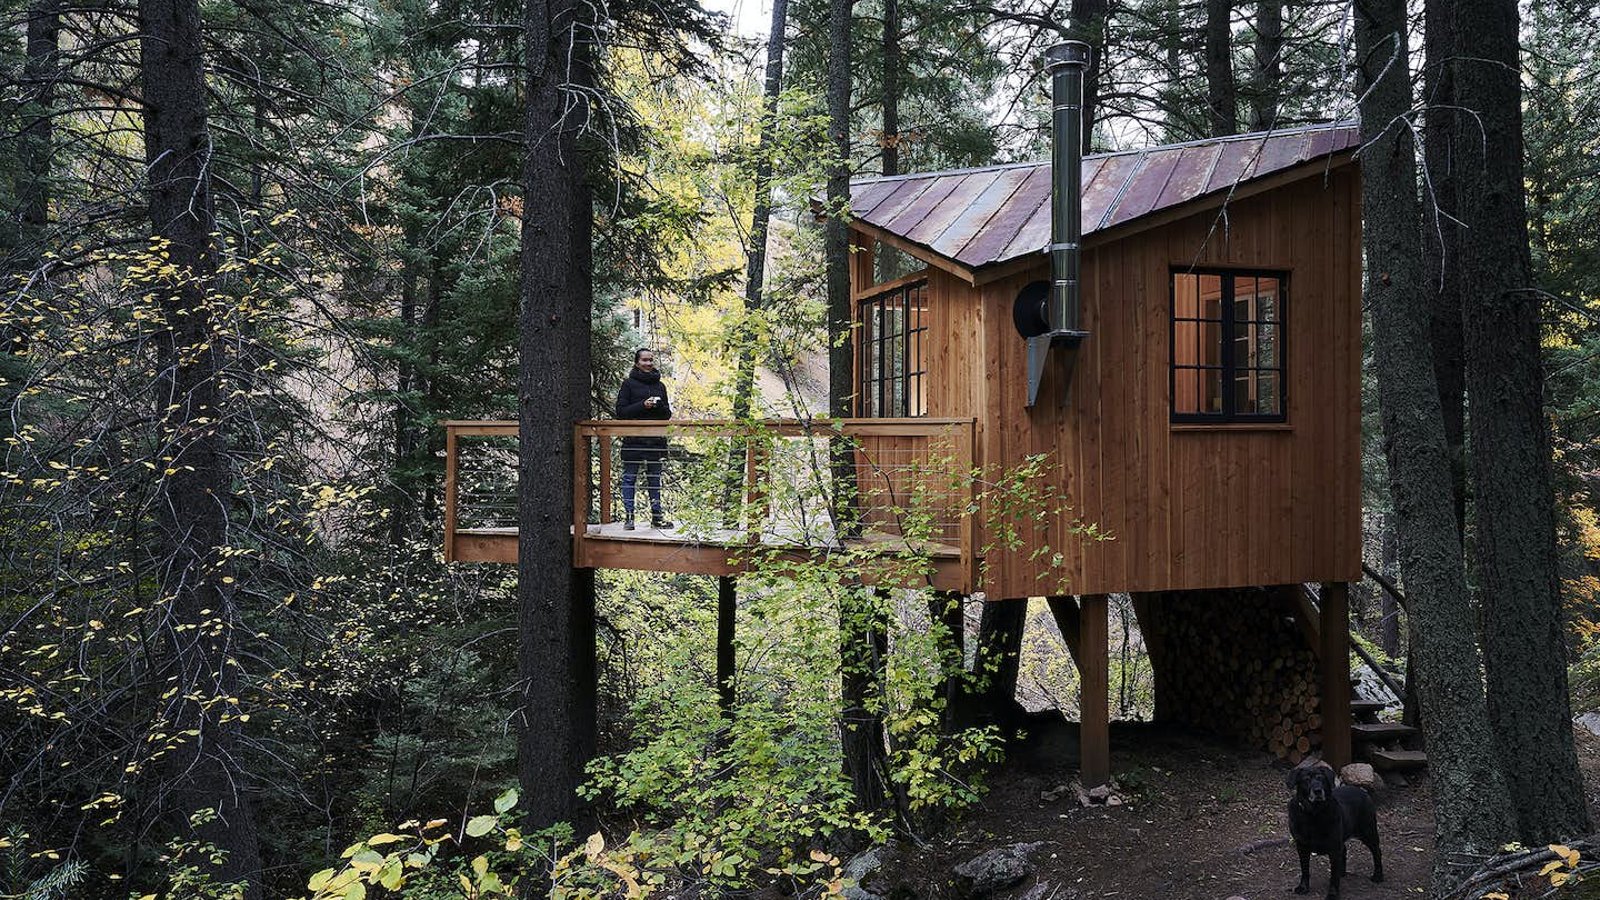 Après avoir été confinée pendant la pandémie, une famille a décidé de se construire une petite cabane en plein cœur d’une forêt 